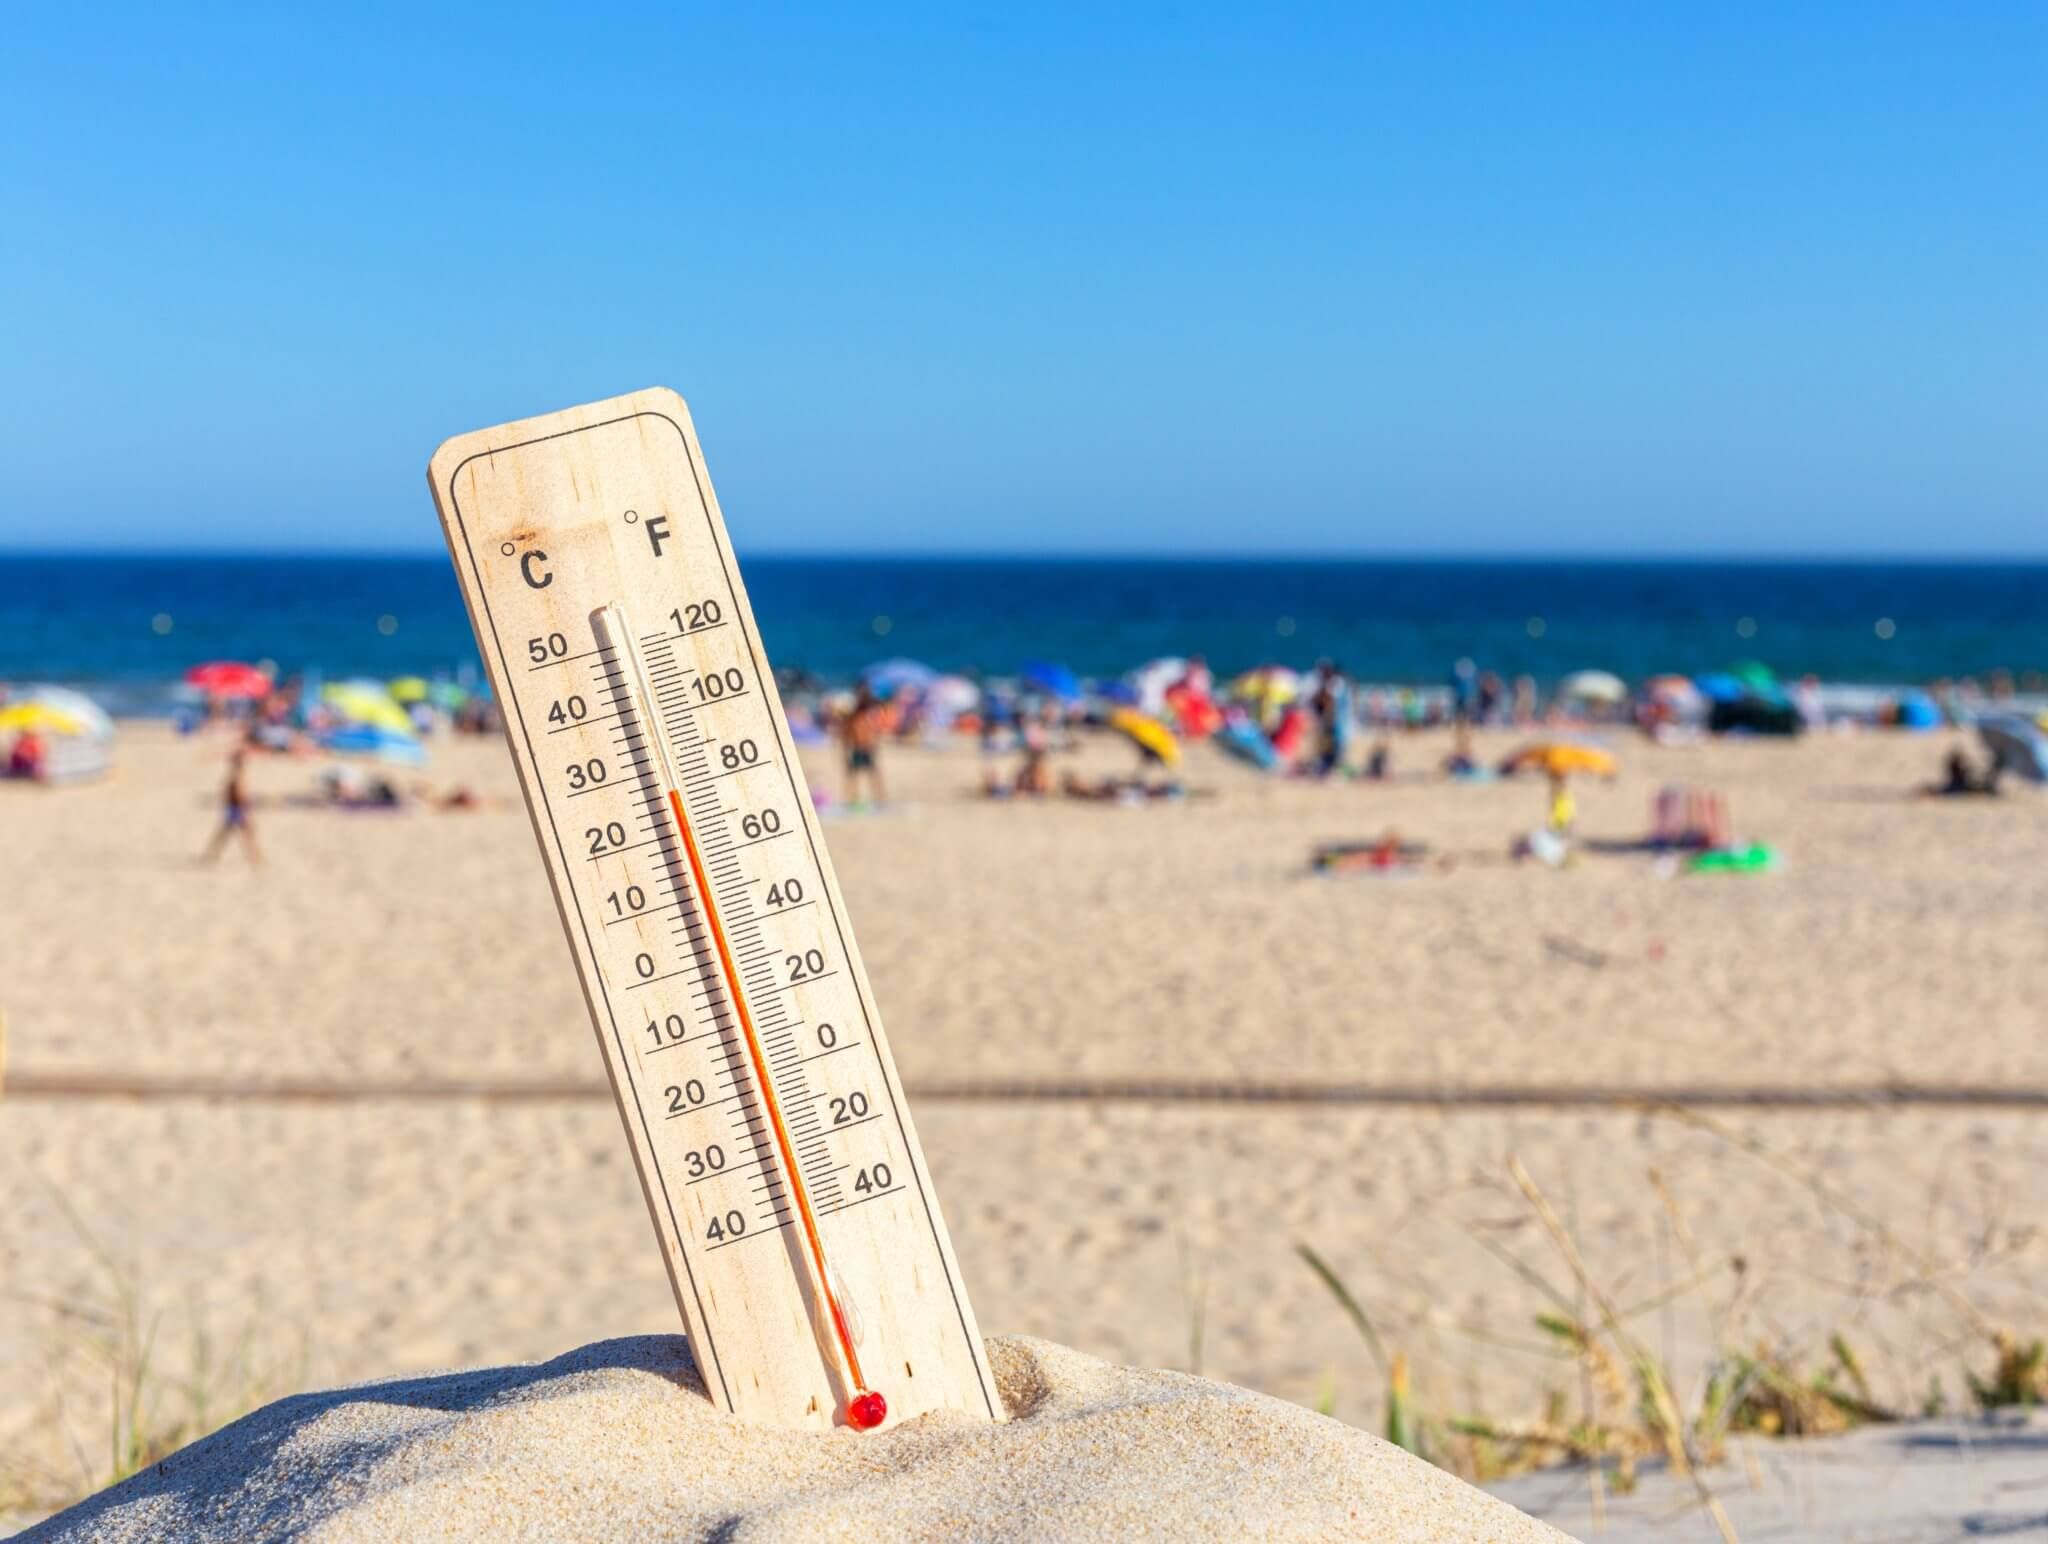 Extremwetterlagen im Urlaub: Mit diesen Tipps können Urlaubende diese vermeiden